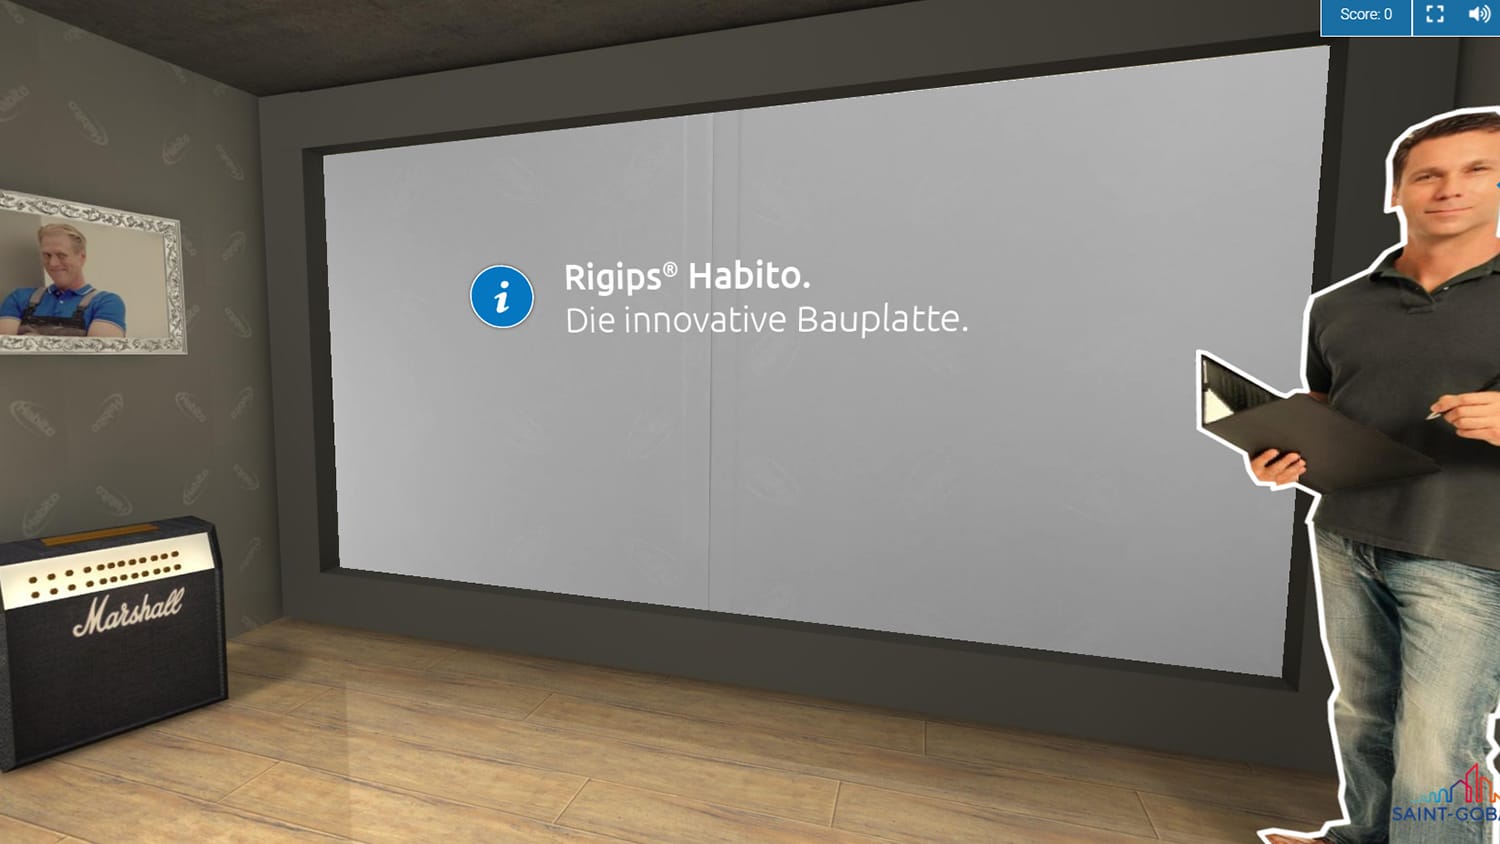 Besuchen Sie unseren virtuellen Messestand und erfahren Sie mehr über die Rigips® Habito Bauplatte.